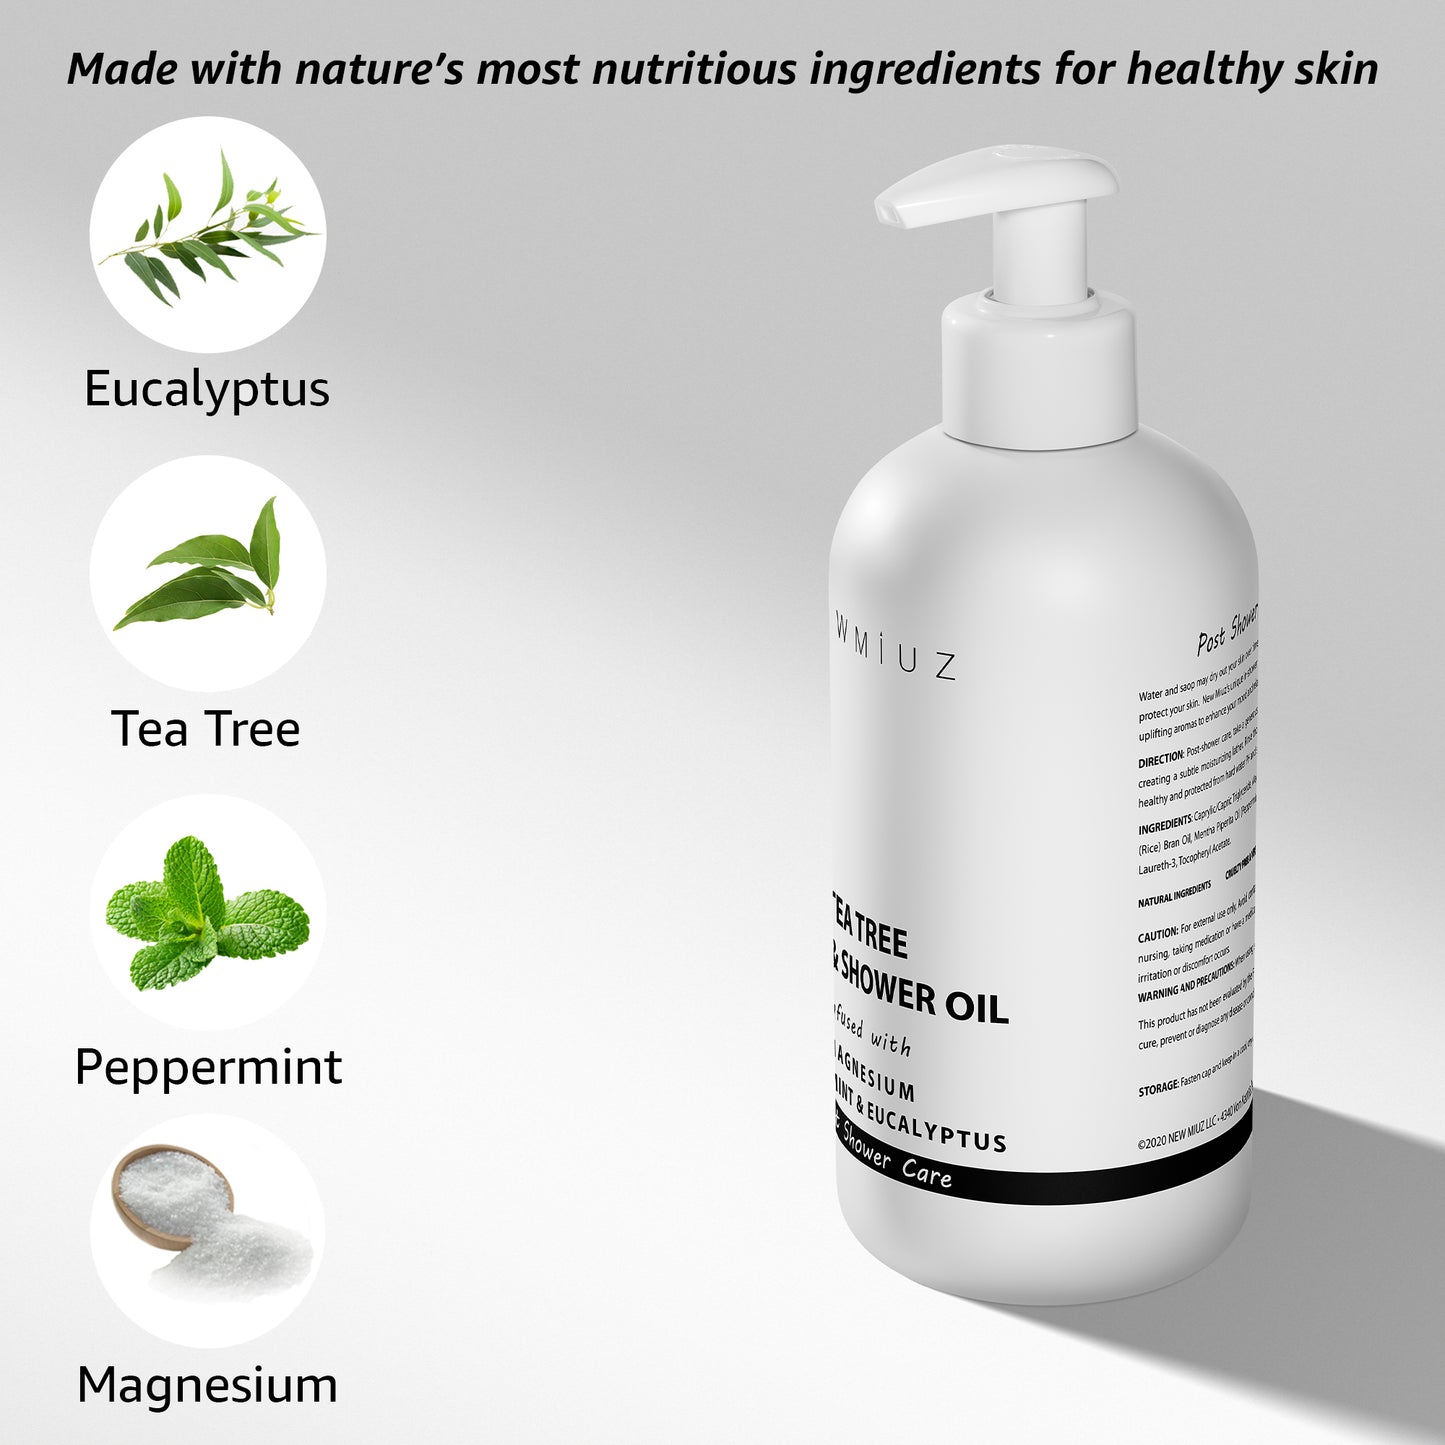 Tea Tree Magnesium Bath Shower Oil